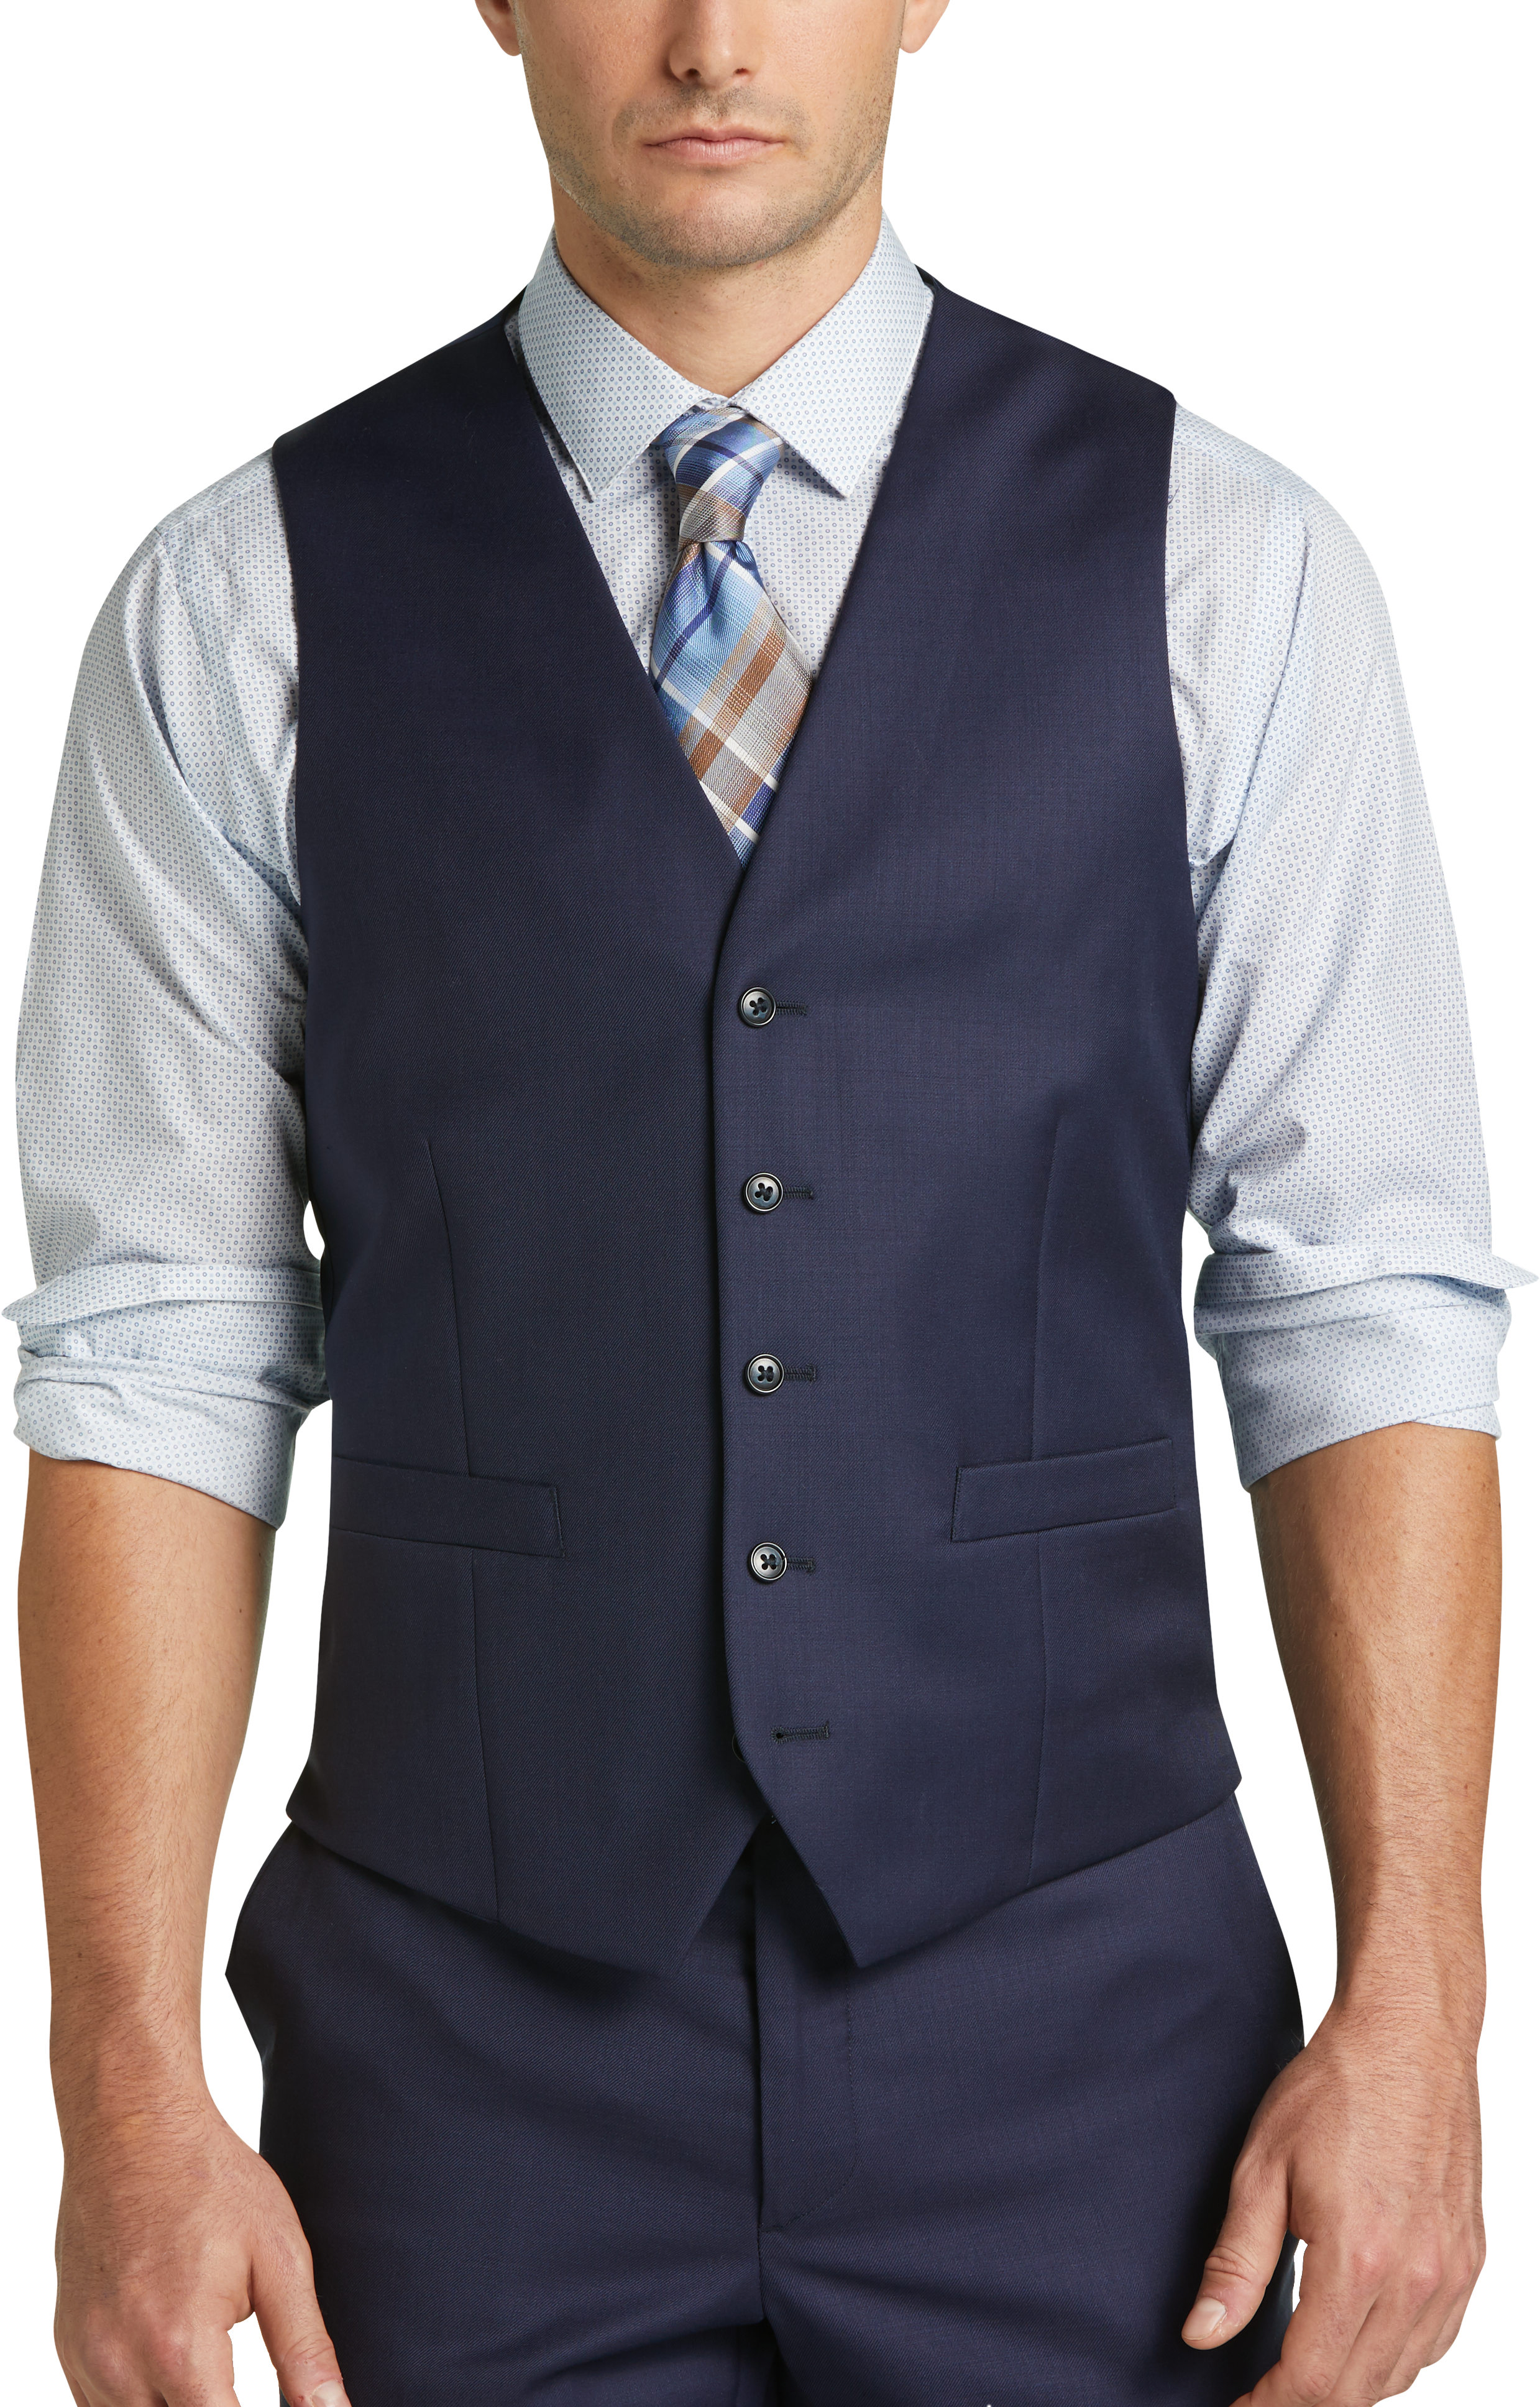 JOE Joseph Abboud Blue Slim Fit Suit Separates Vest - Men's Suits | Men ...